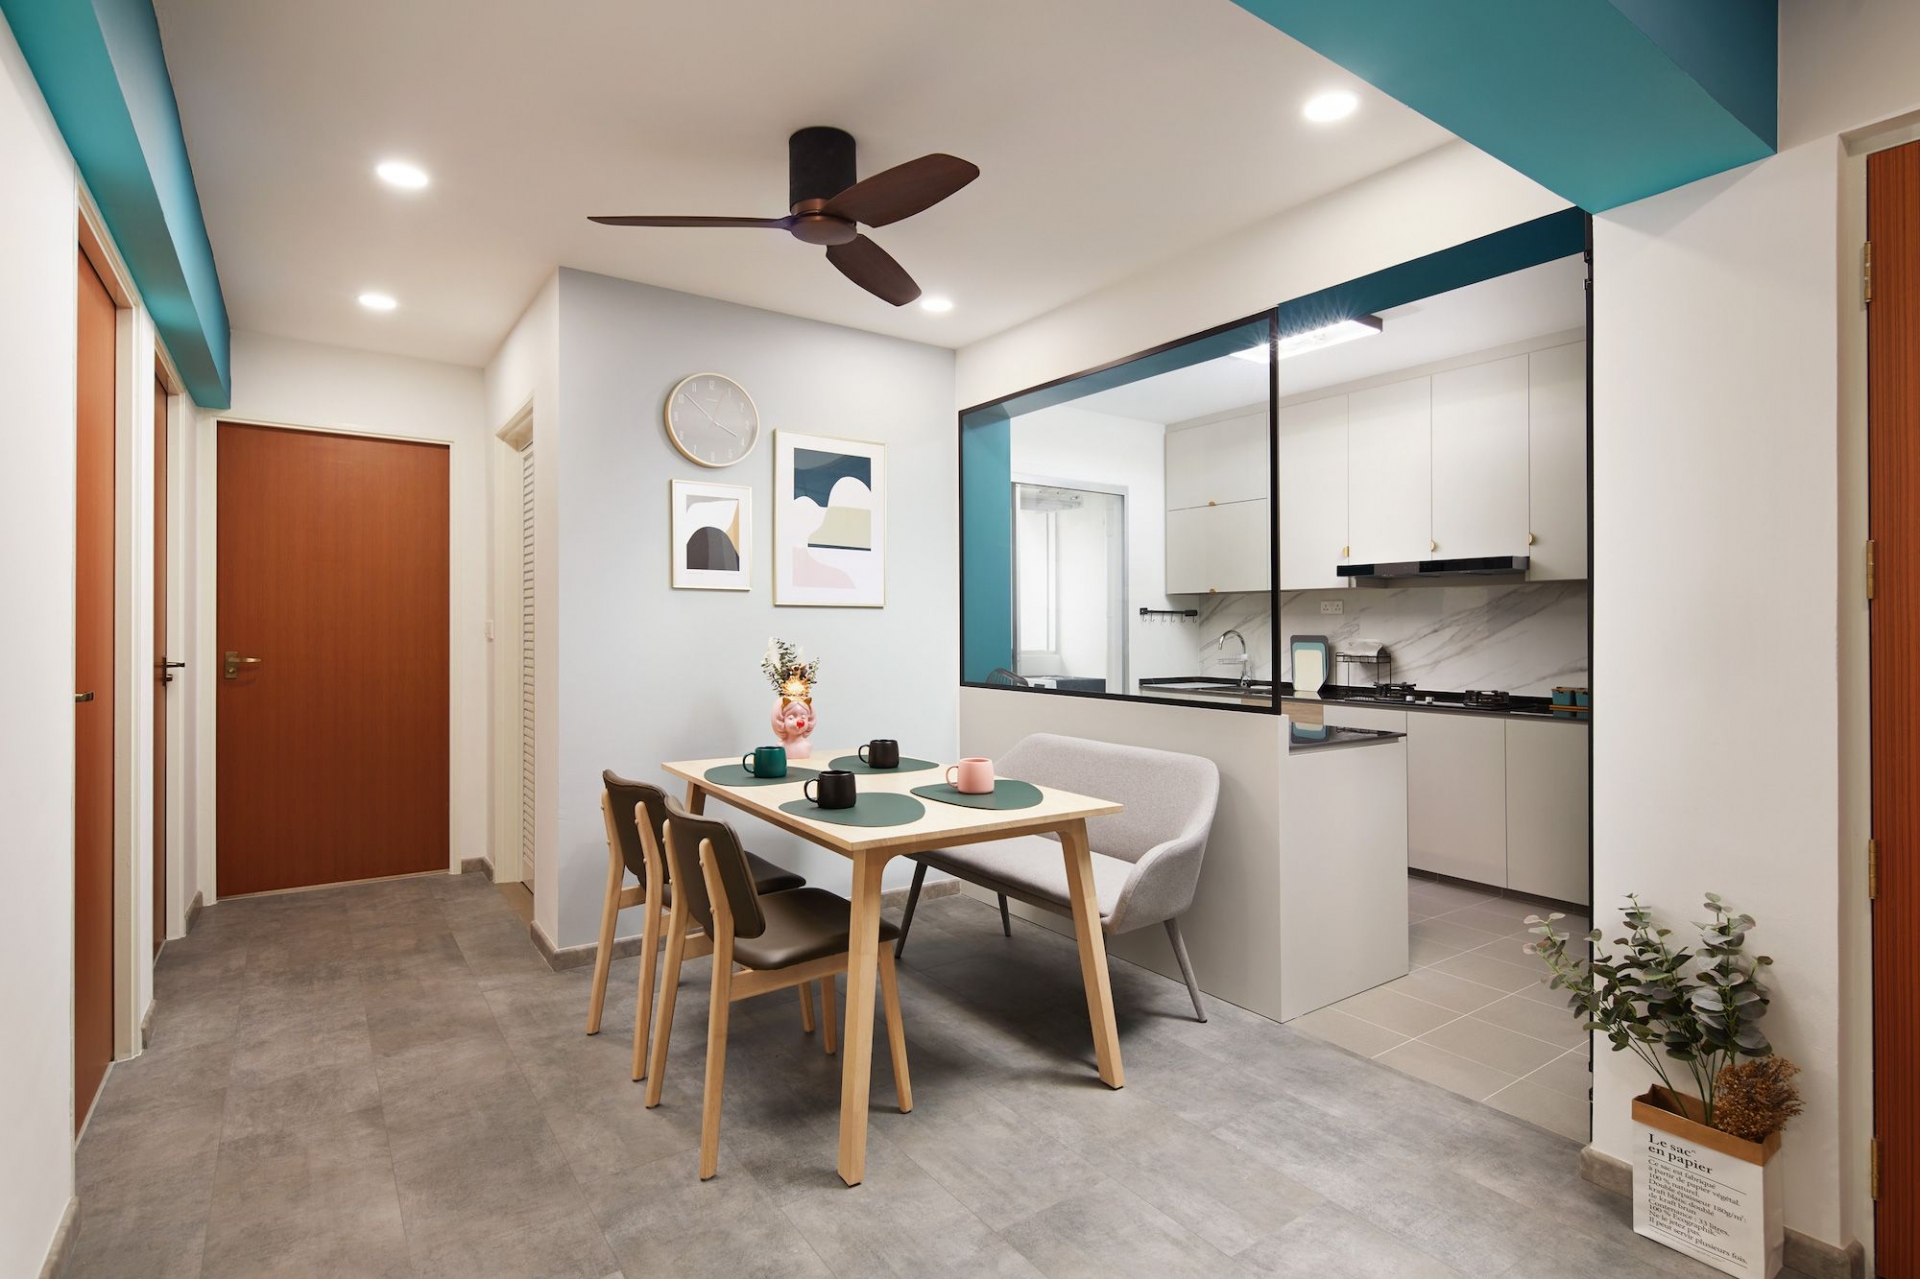 Phòng bếp nhỏ thiết kế đơn giản, nội thất gọn gàng, liên kết với khu vực bên ngoài bằng điểm nhấn màu xanh ngọc lam đẹp mắt. Ngoài ra, bức tường kính phía trên cũng giúp phân vùng nhưng vẫn tạo được thông thoáng nhất định.